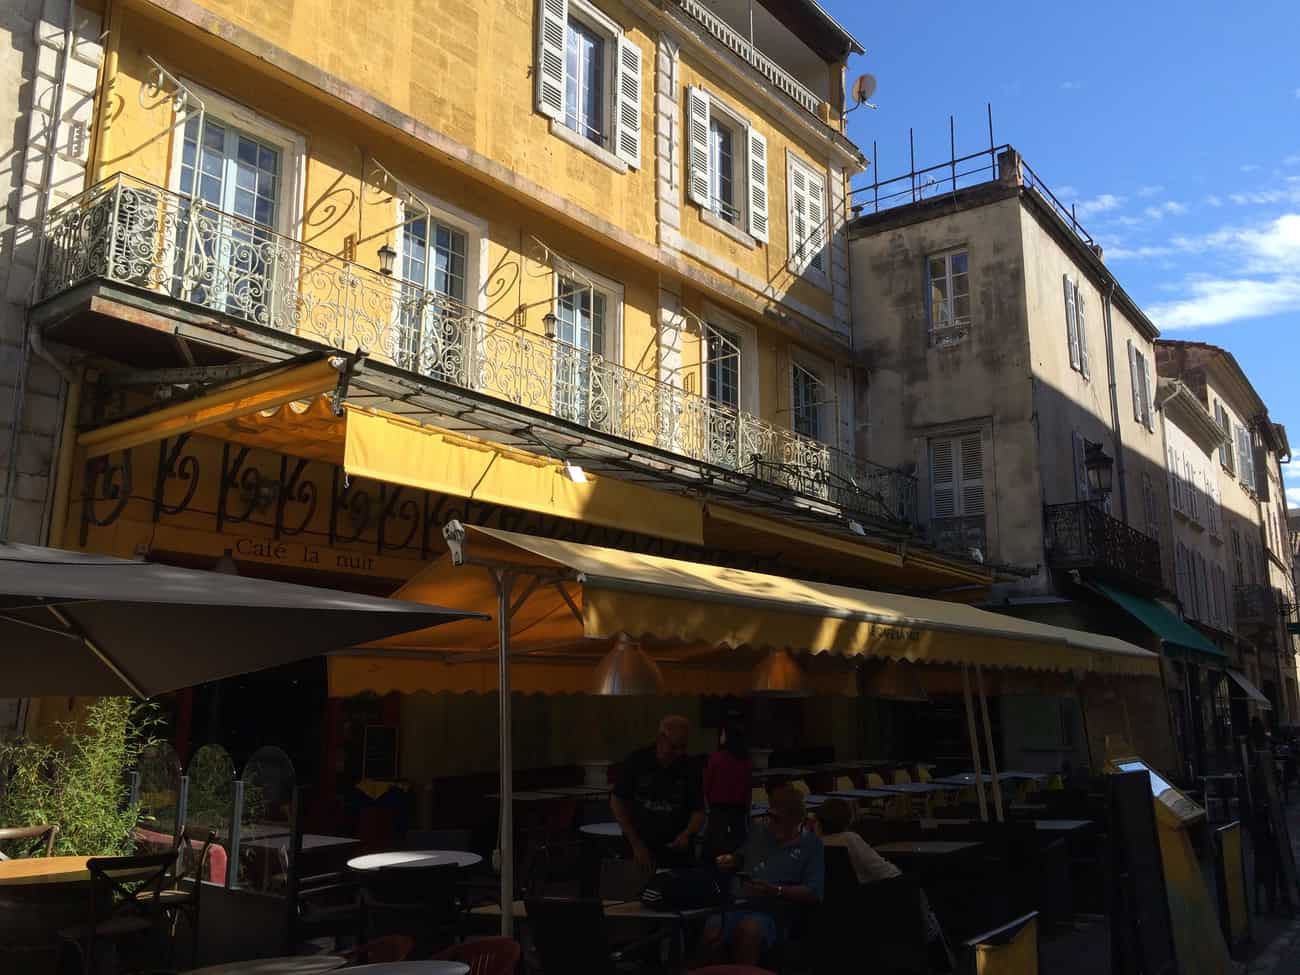 Arles - Van Gogh trail - Le Café Le Soir today